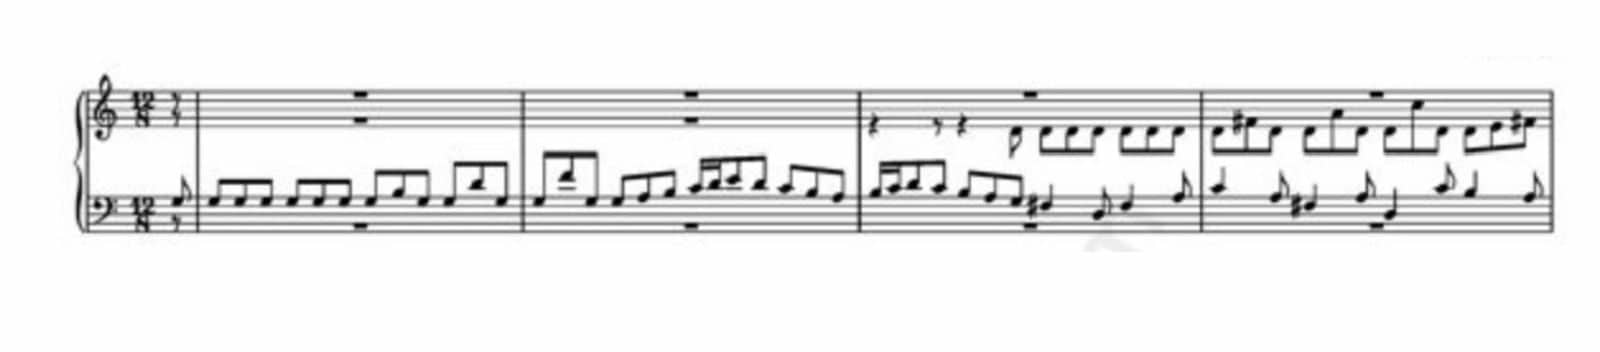  JS Bach, Fughetta super, BWV 679, exposition